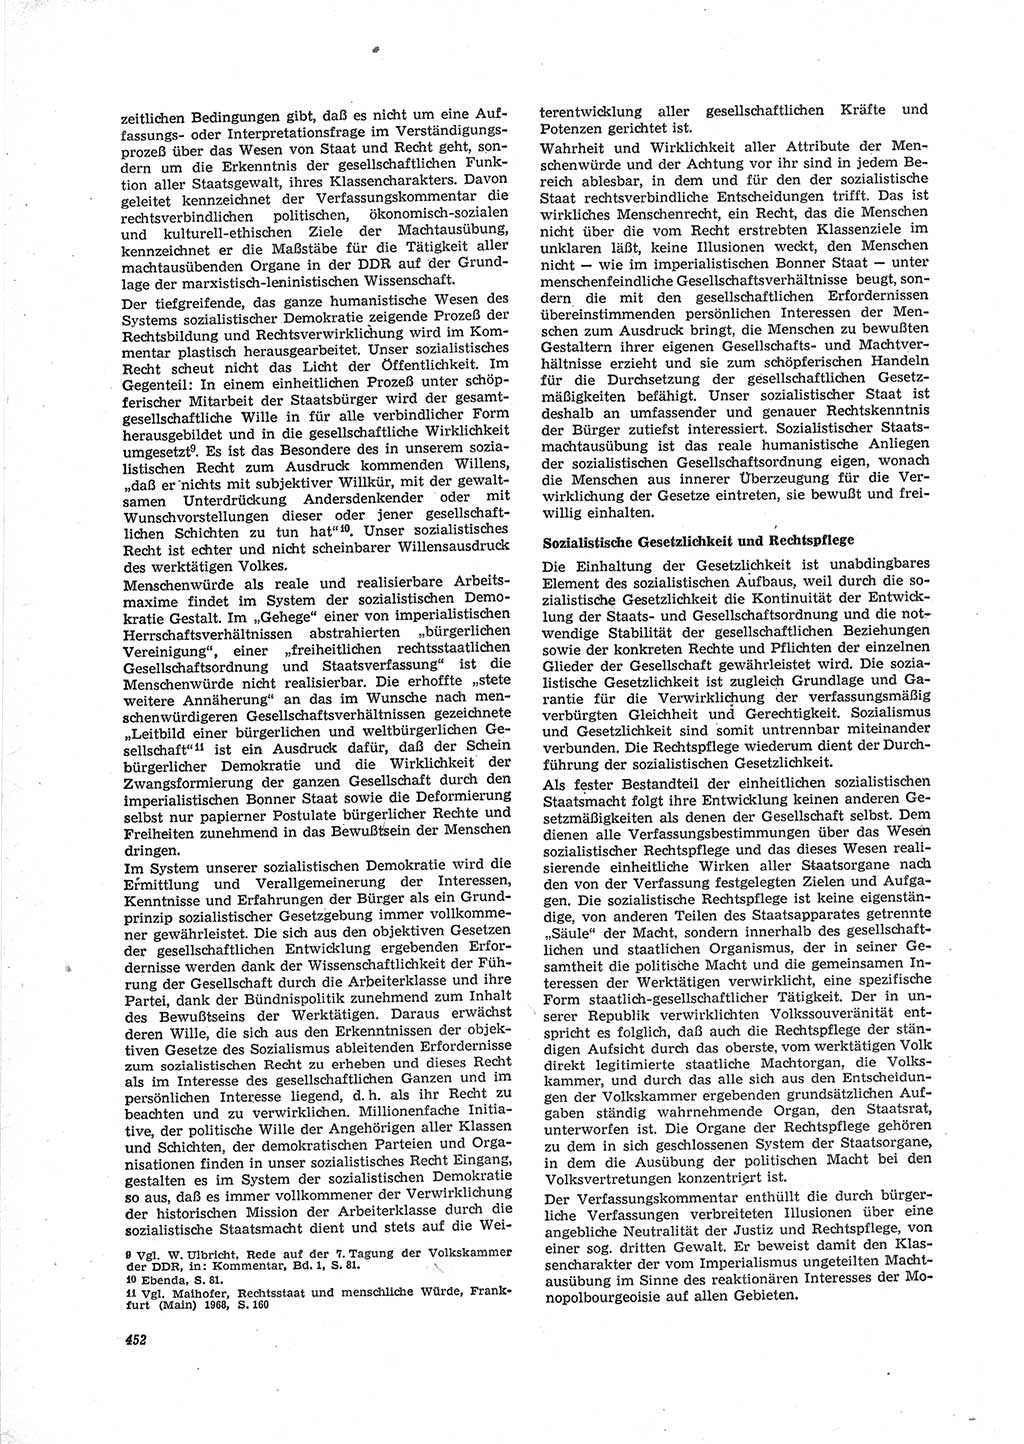 Neue Justiz (NJ), Zeitschrift für Recht und Rechtswissenschaft [Deutsche Demokratische Republik (DDR)], 23. Jahrgang 1969, Seite 452 (NJ DDR 1969, S. 452)